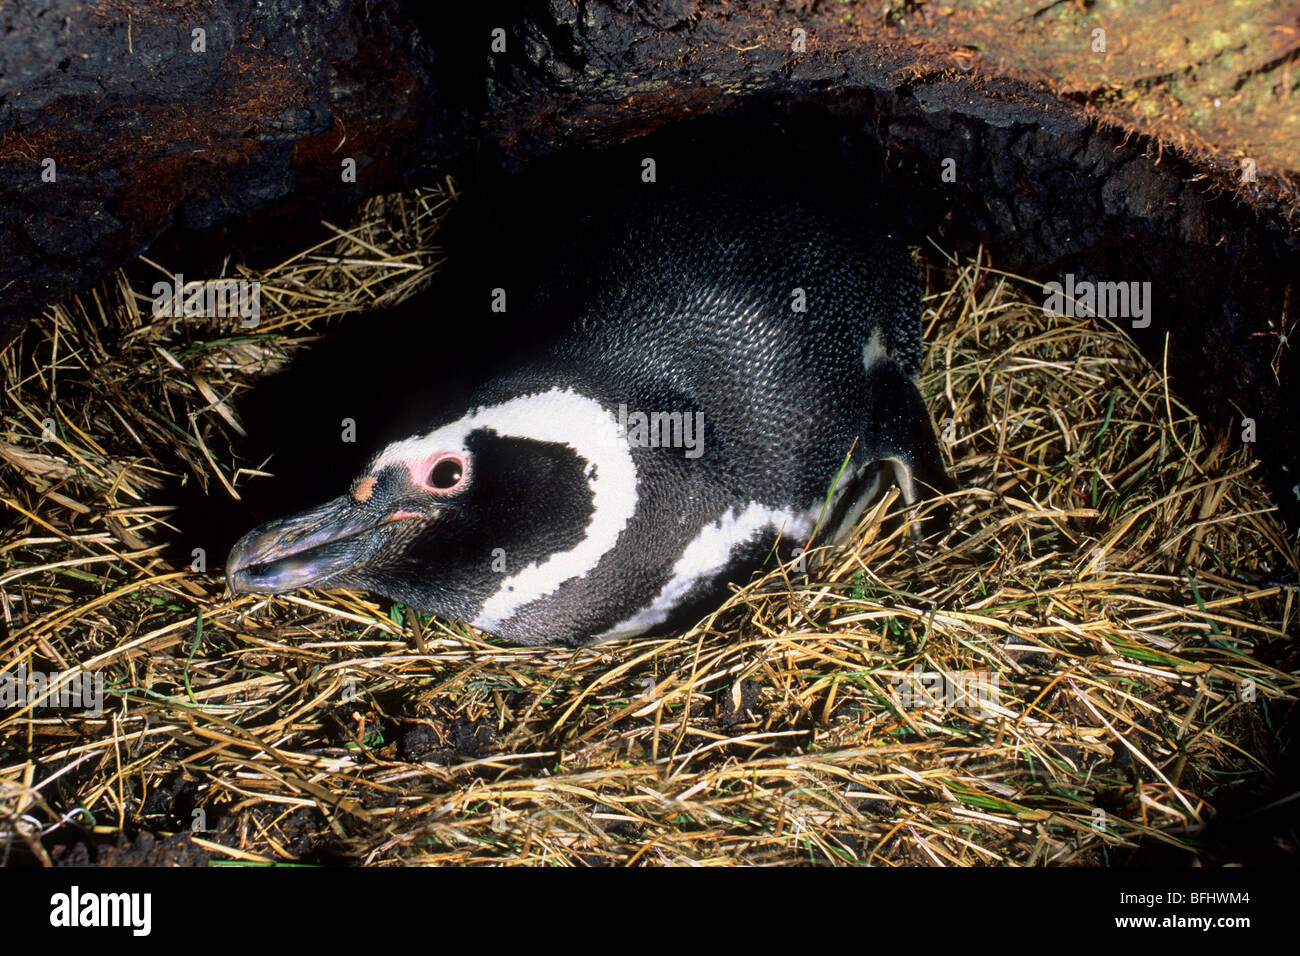 Magellanic penguin (Spheniscus magellanicus) inside its nesting burrow, Falkland Islands Stock Photo